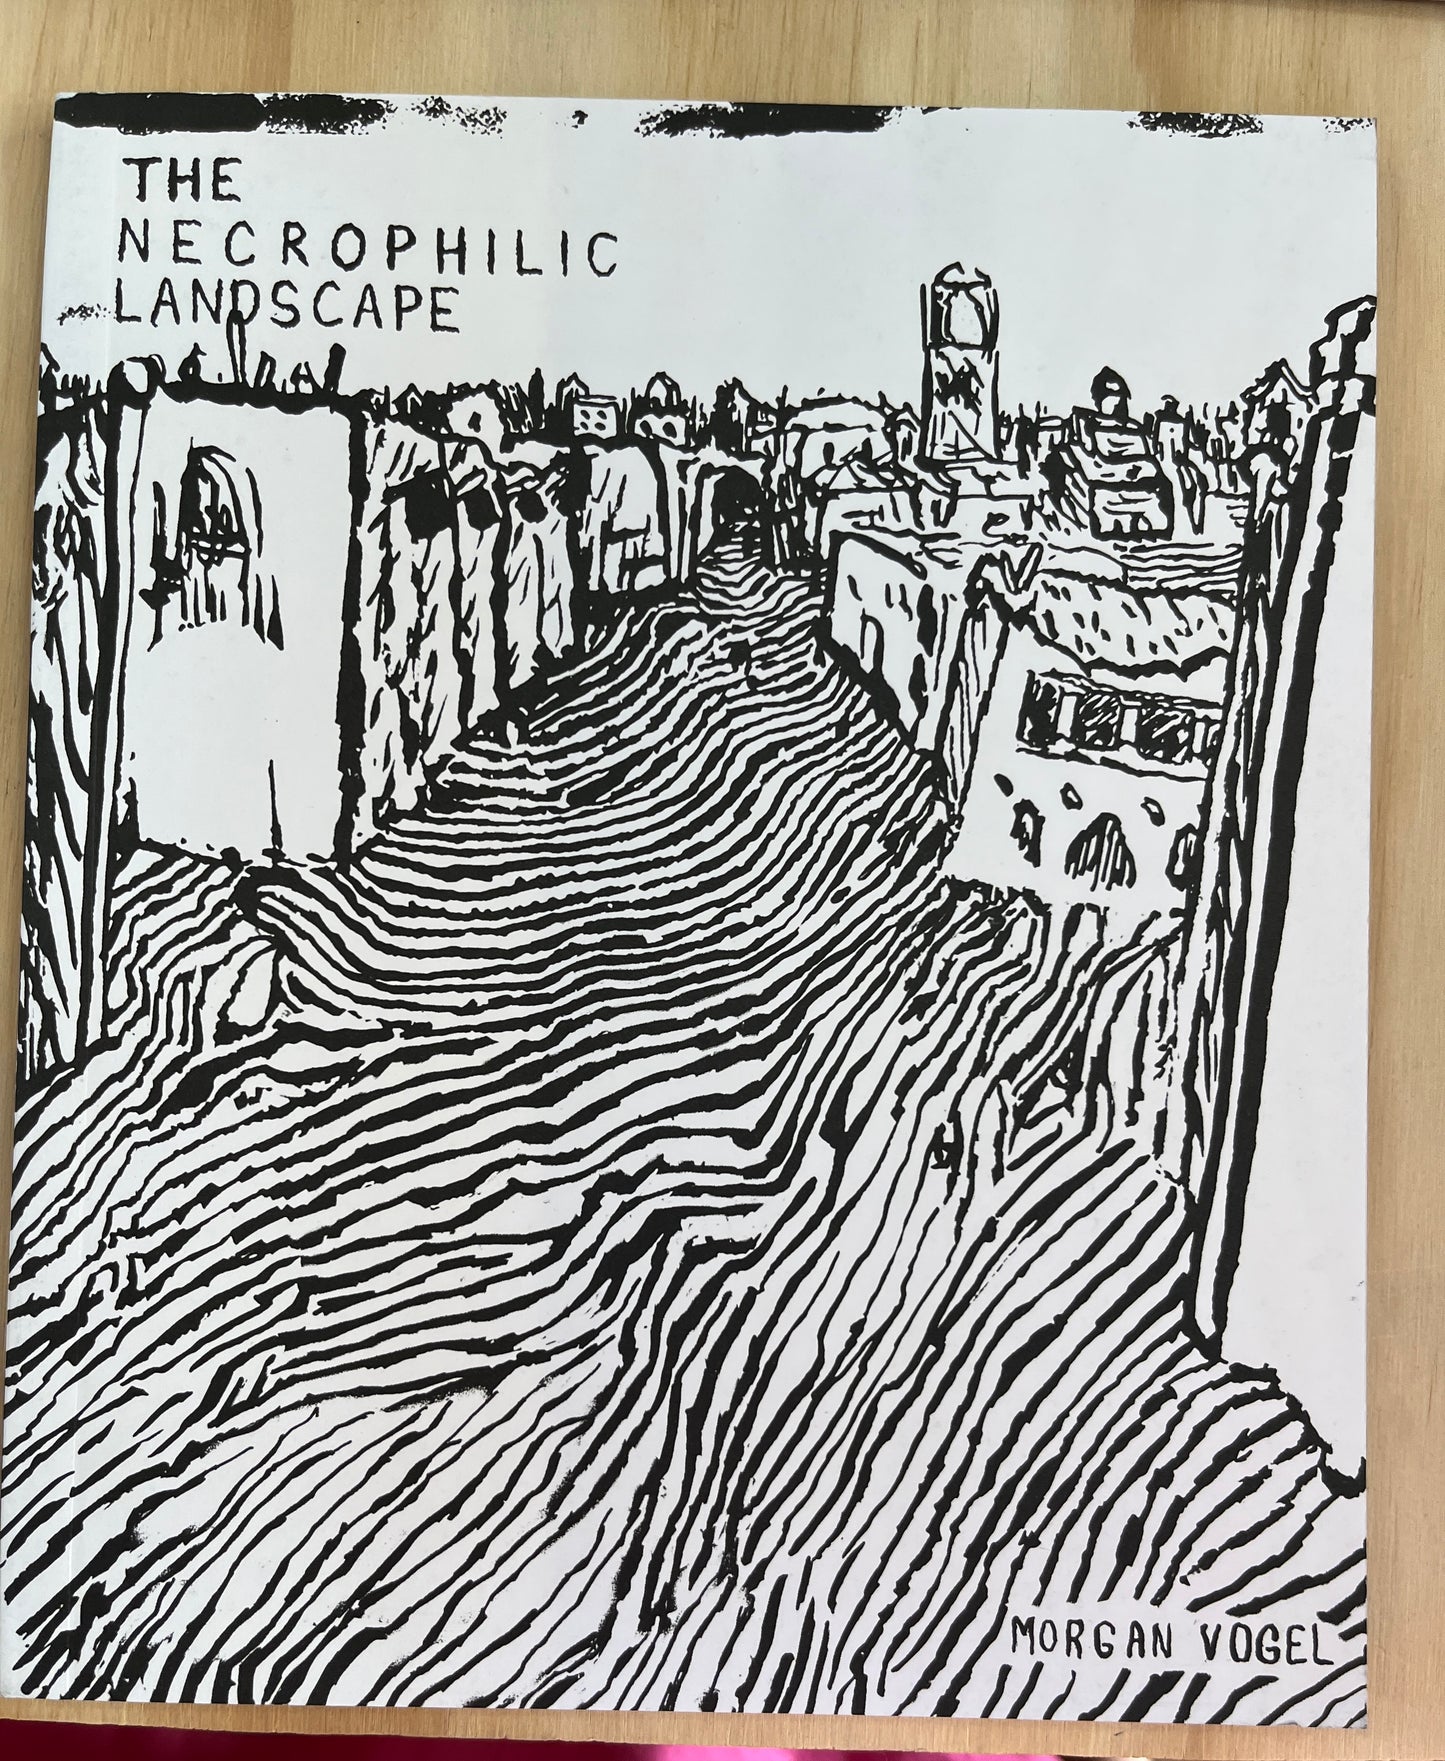 The Necrophilic Landscape